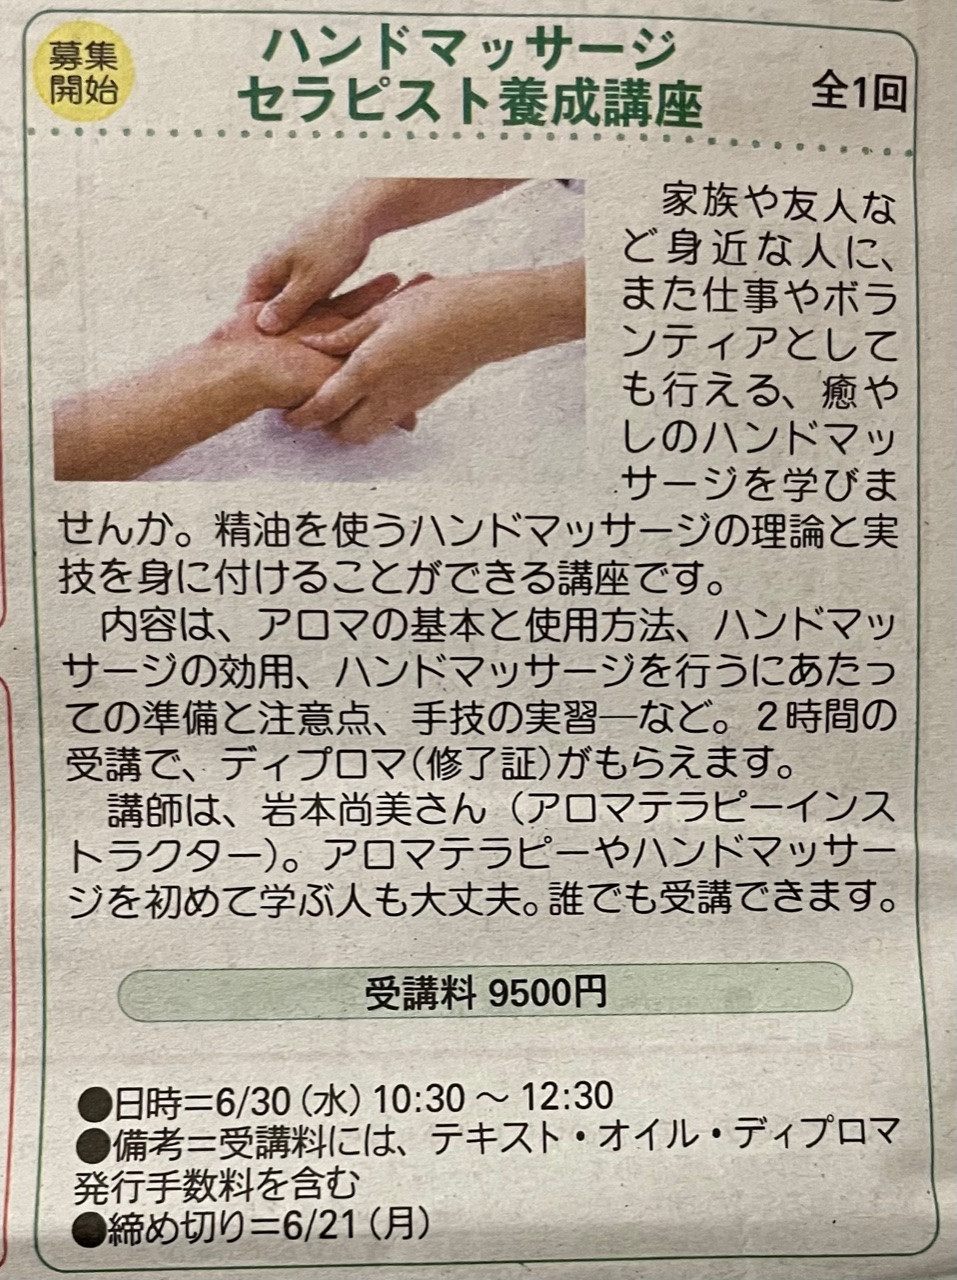 【募集】福山リビング新聞社にて「ハンドマッサージセラピスト養成講座」を開催します。